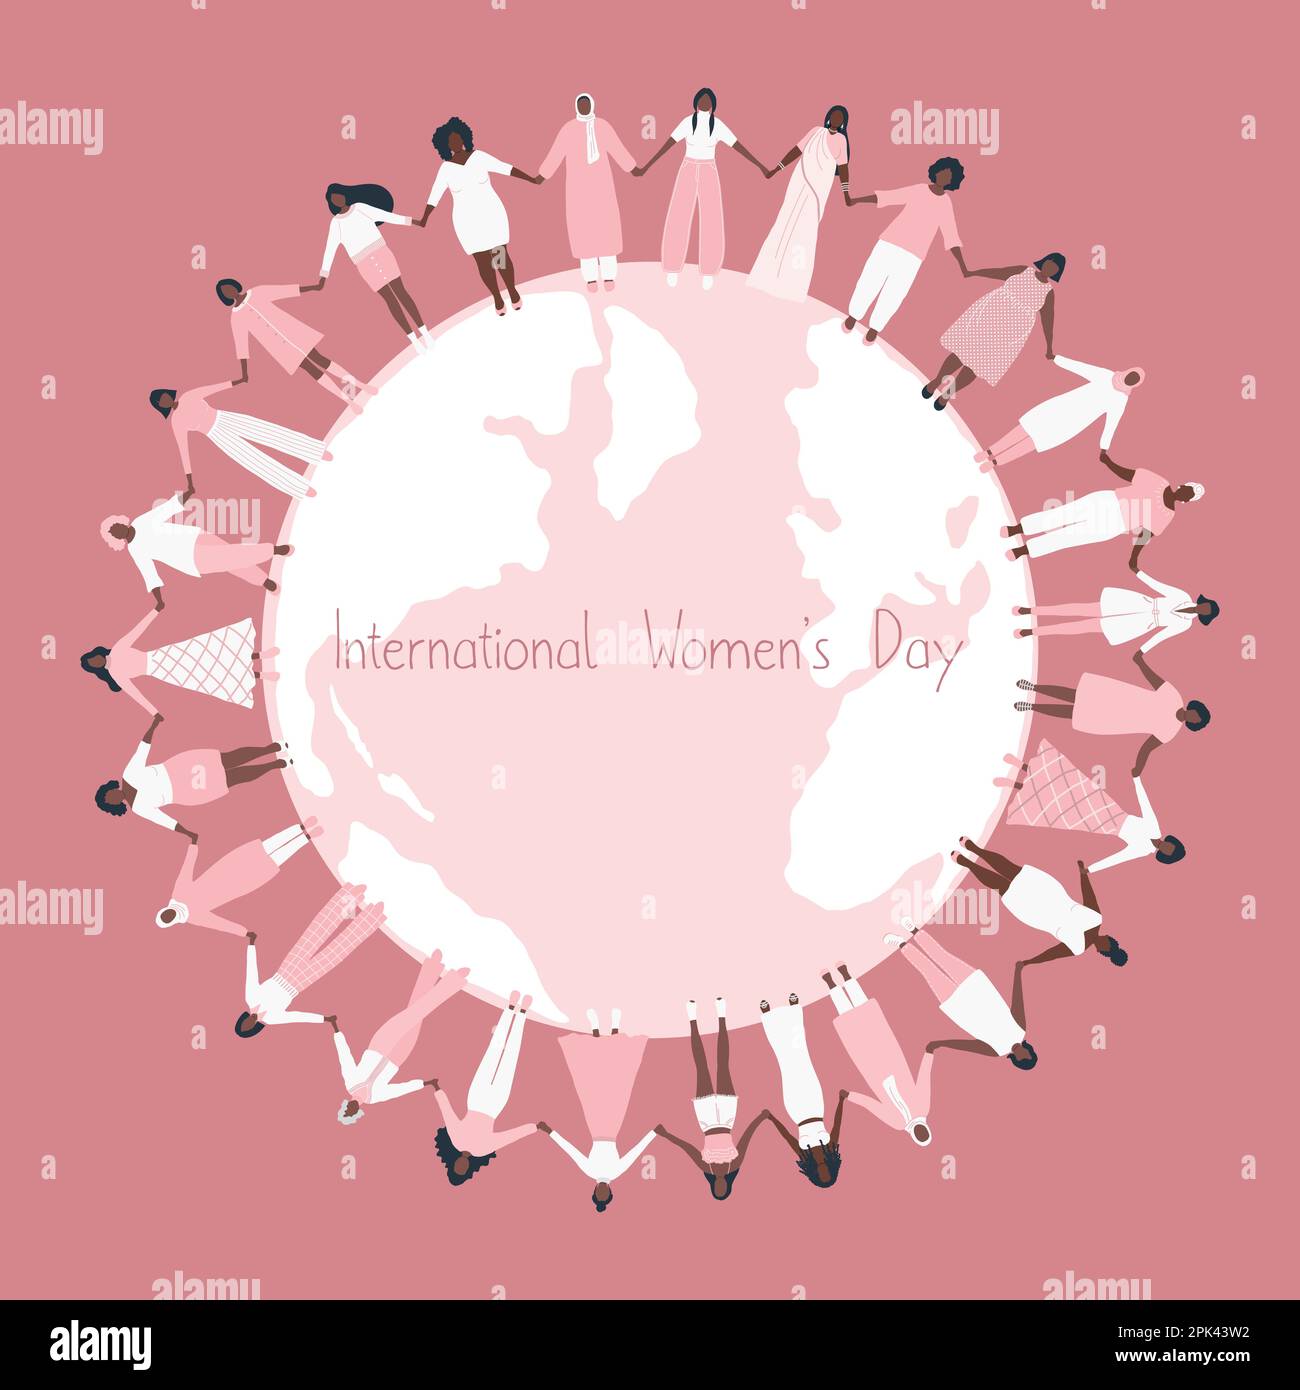 Les femmes tiennent les mains, se tiennent autour de la carte du monde. Concept de la Journée internationale de la femme. Communauté des femmes. La solidarité féminine. Groupe multiculturel Illustration de Vecteur